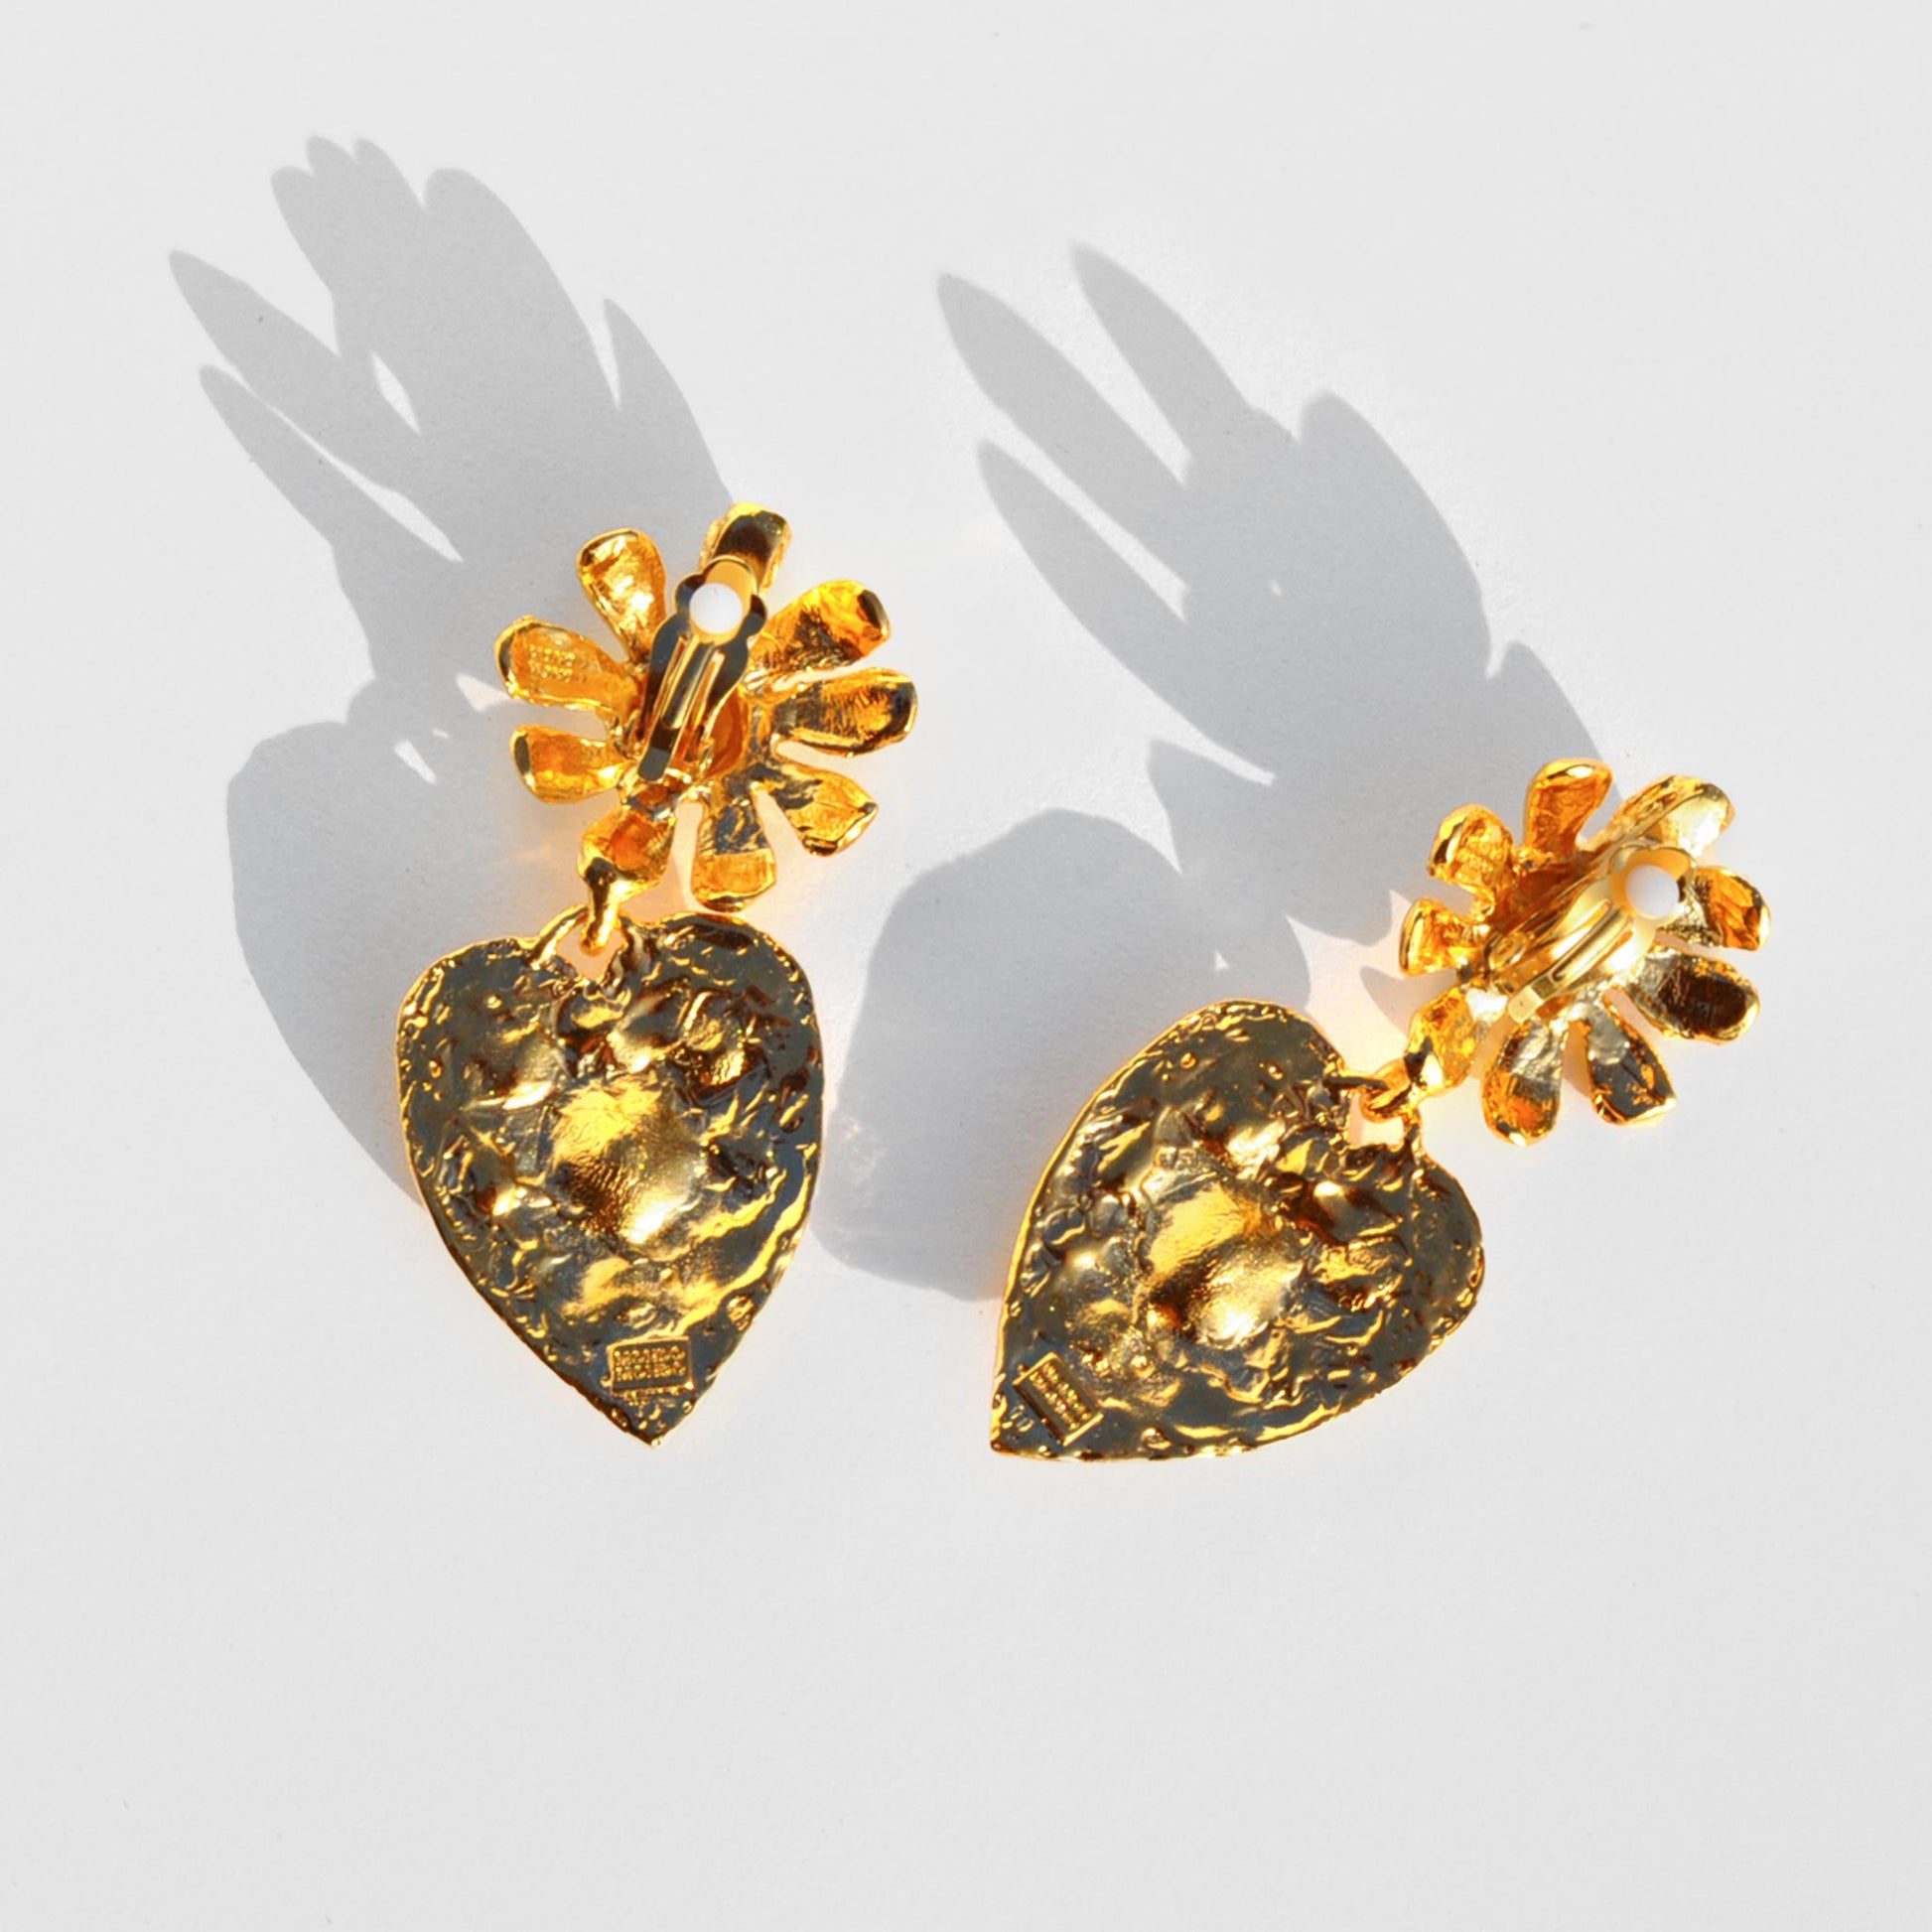 Back image of the tropicana earrings by Mondo Mondo.